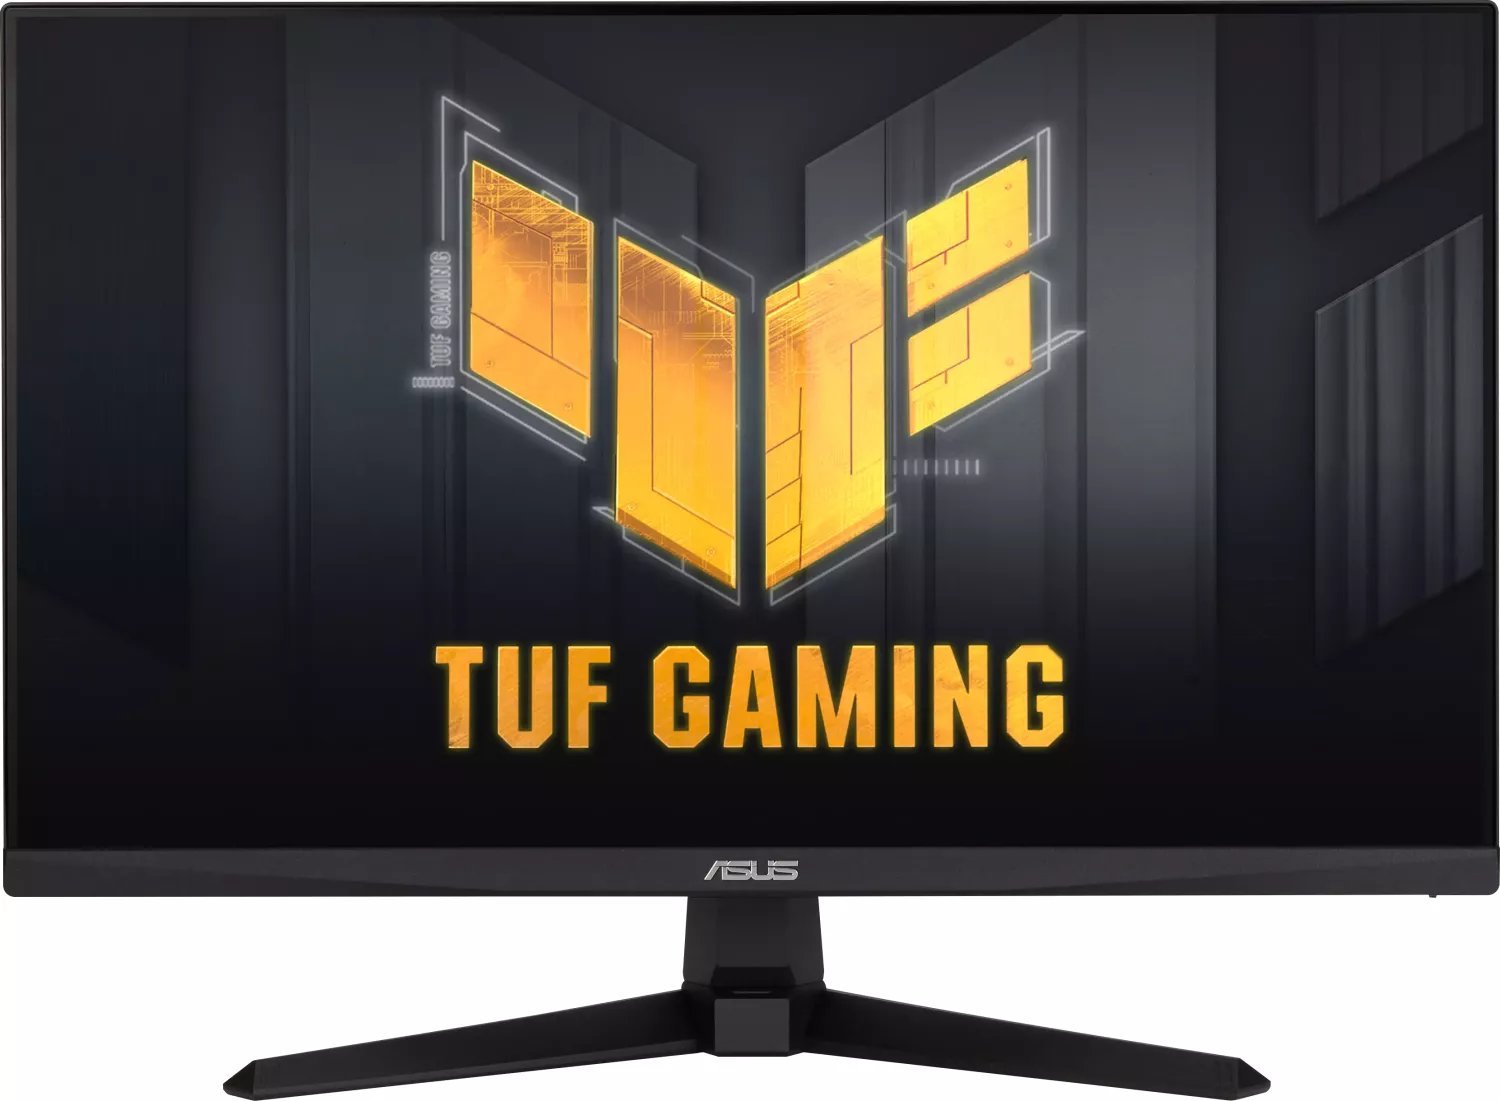 Monitor TUF Gaming 23.8 inches VG249Q3A monitors